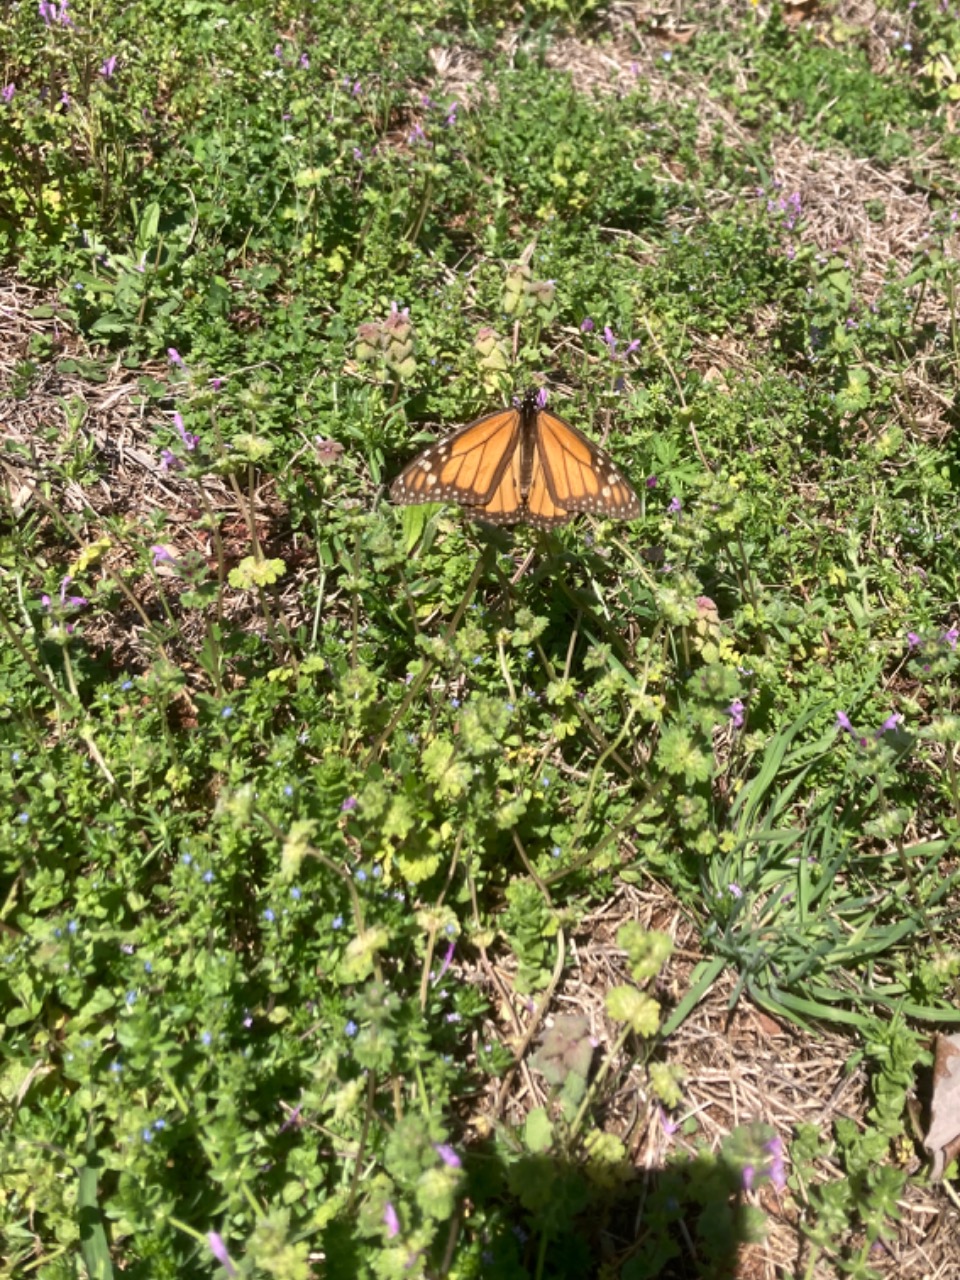 monarch near ground